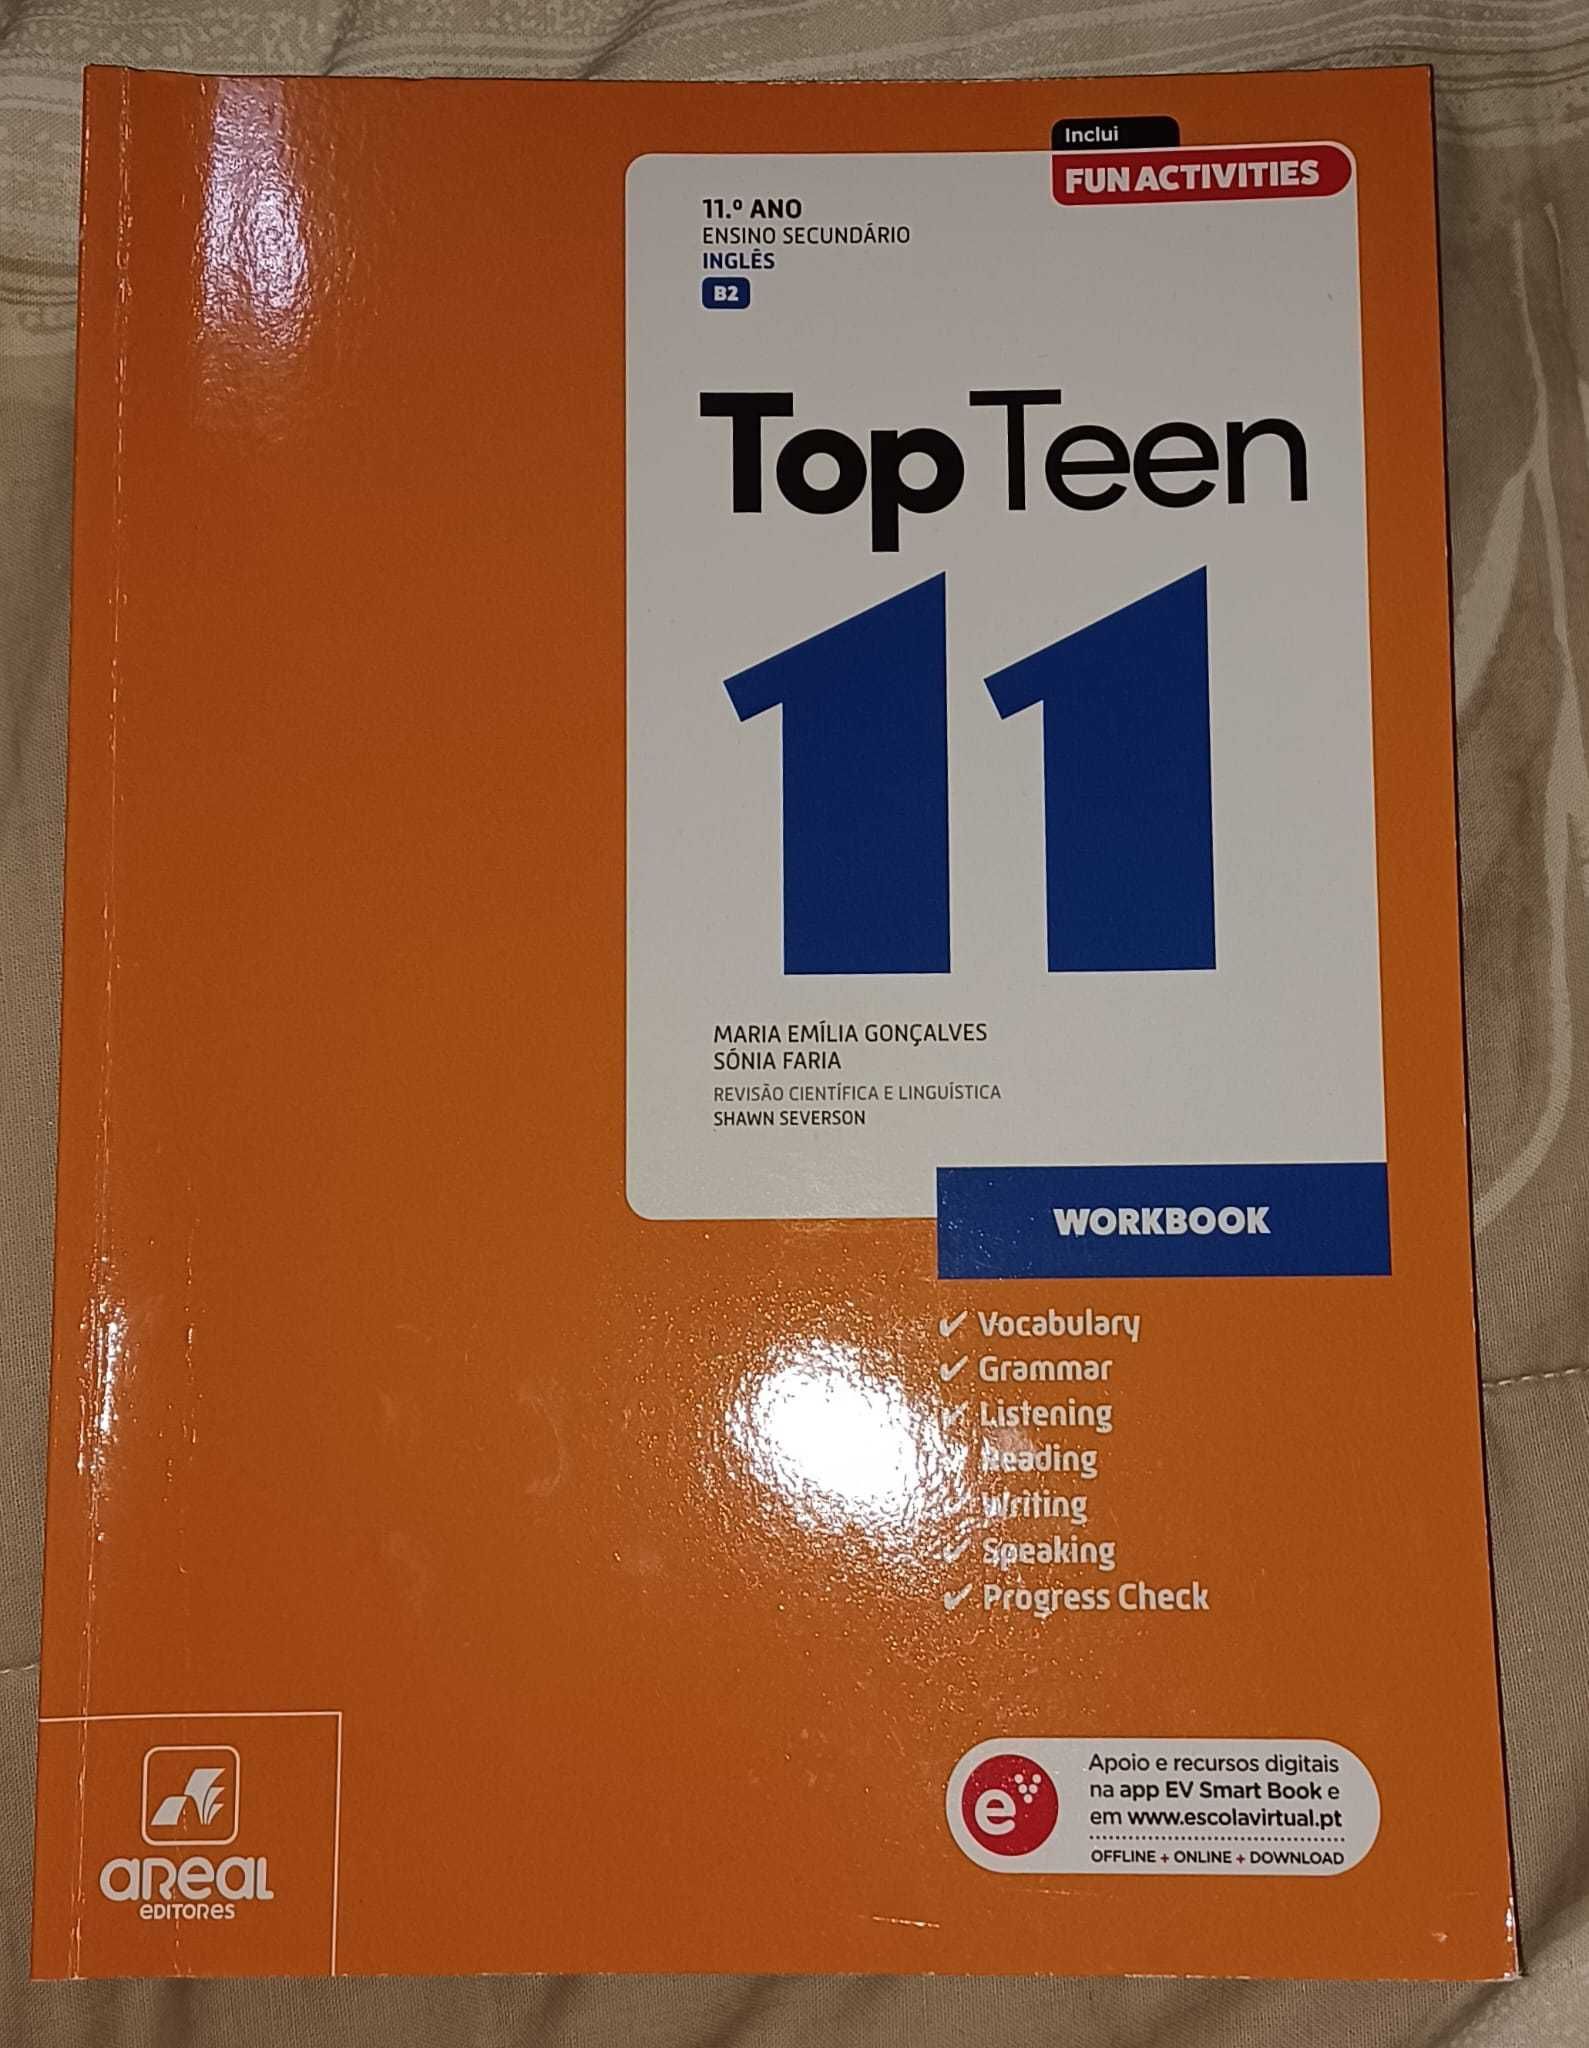 Top Teen- Caderno de atividades Inglês 11ºano